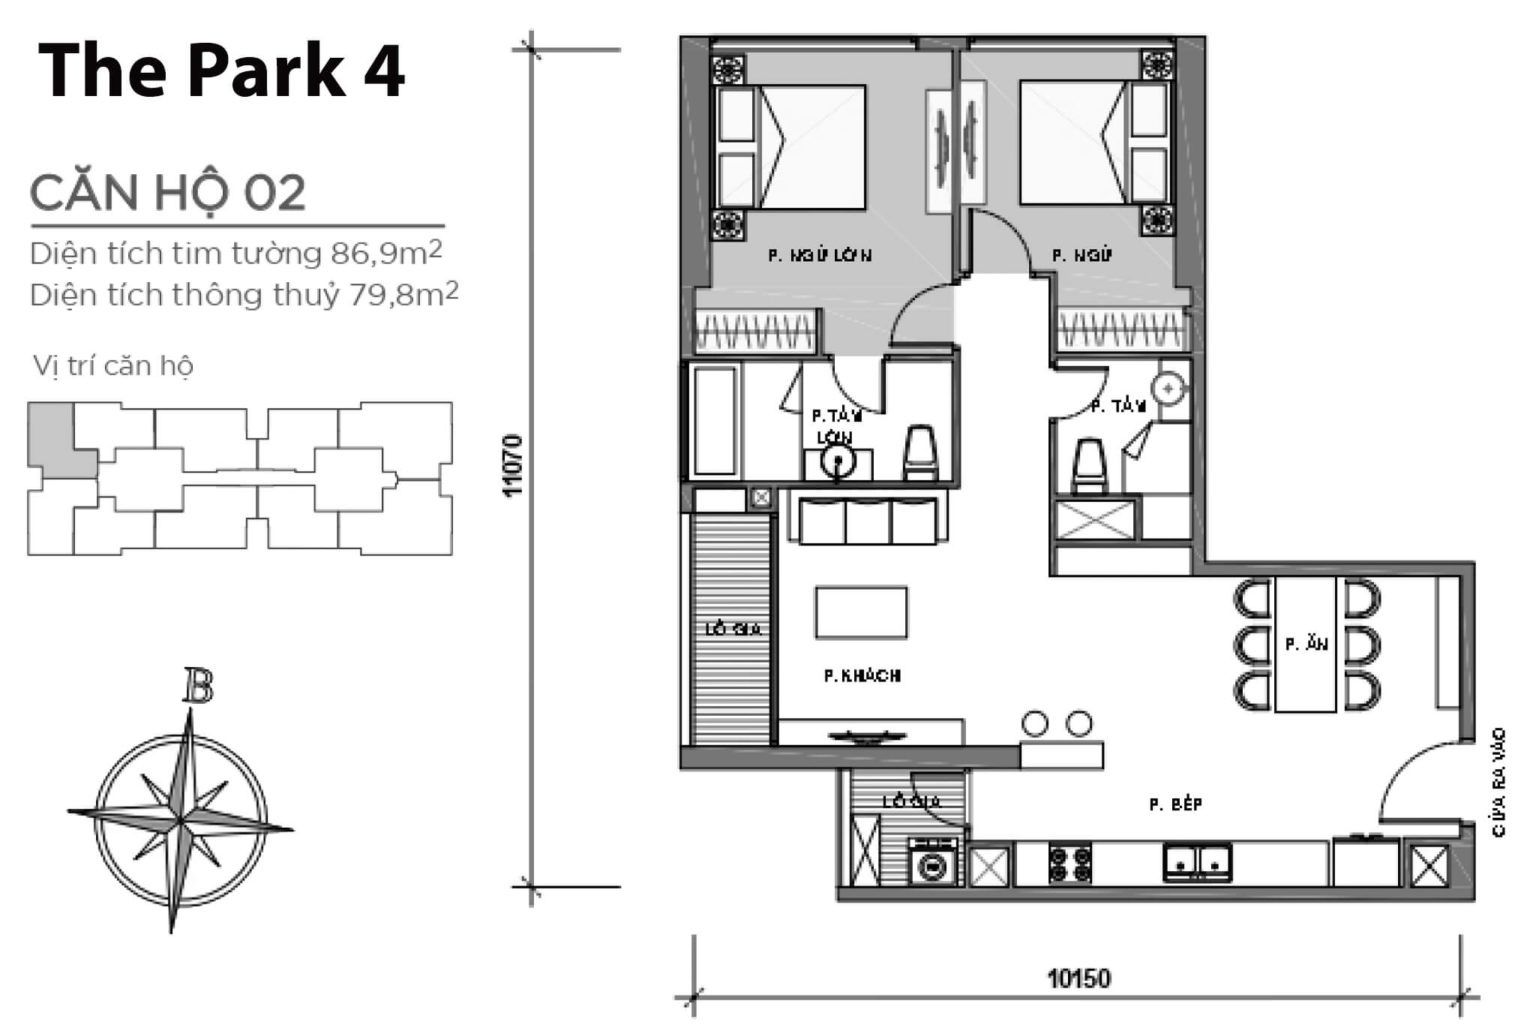 Layout căn hộ P4-02 tầng 2-23 & 24-43